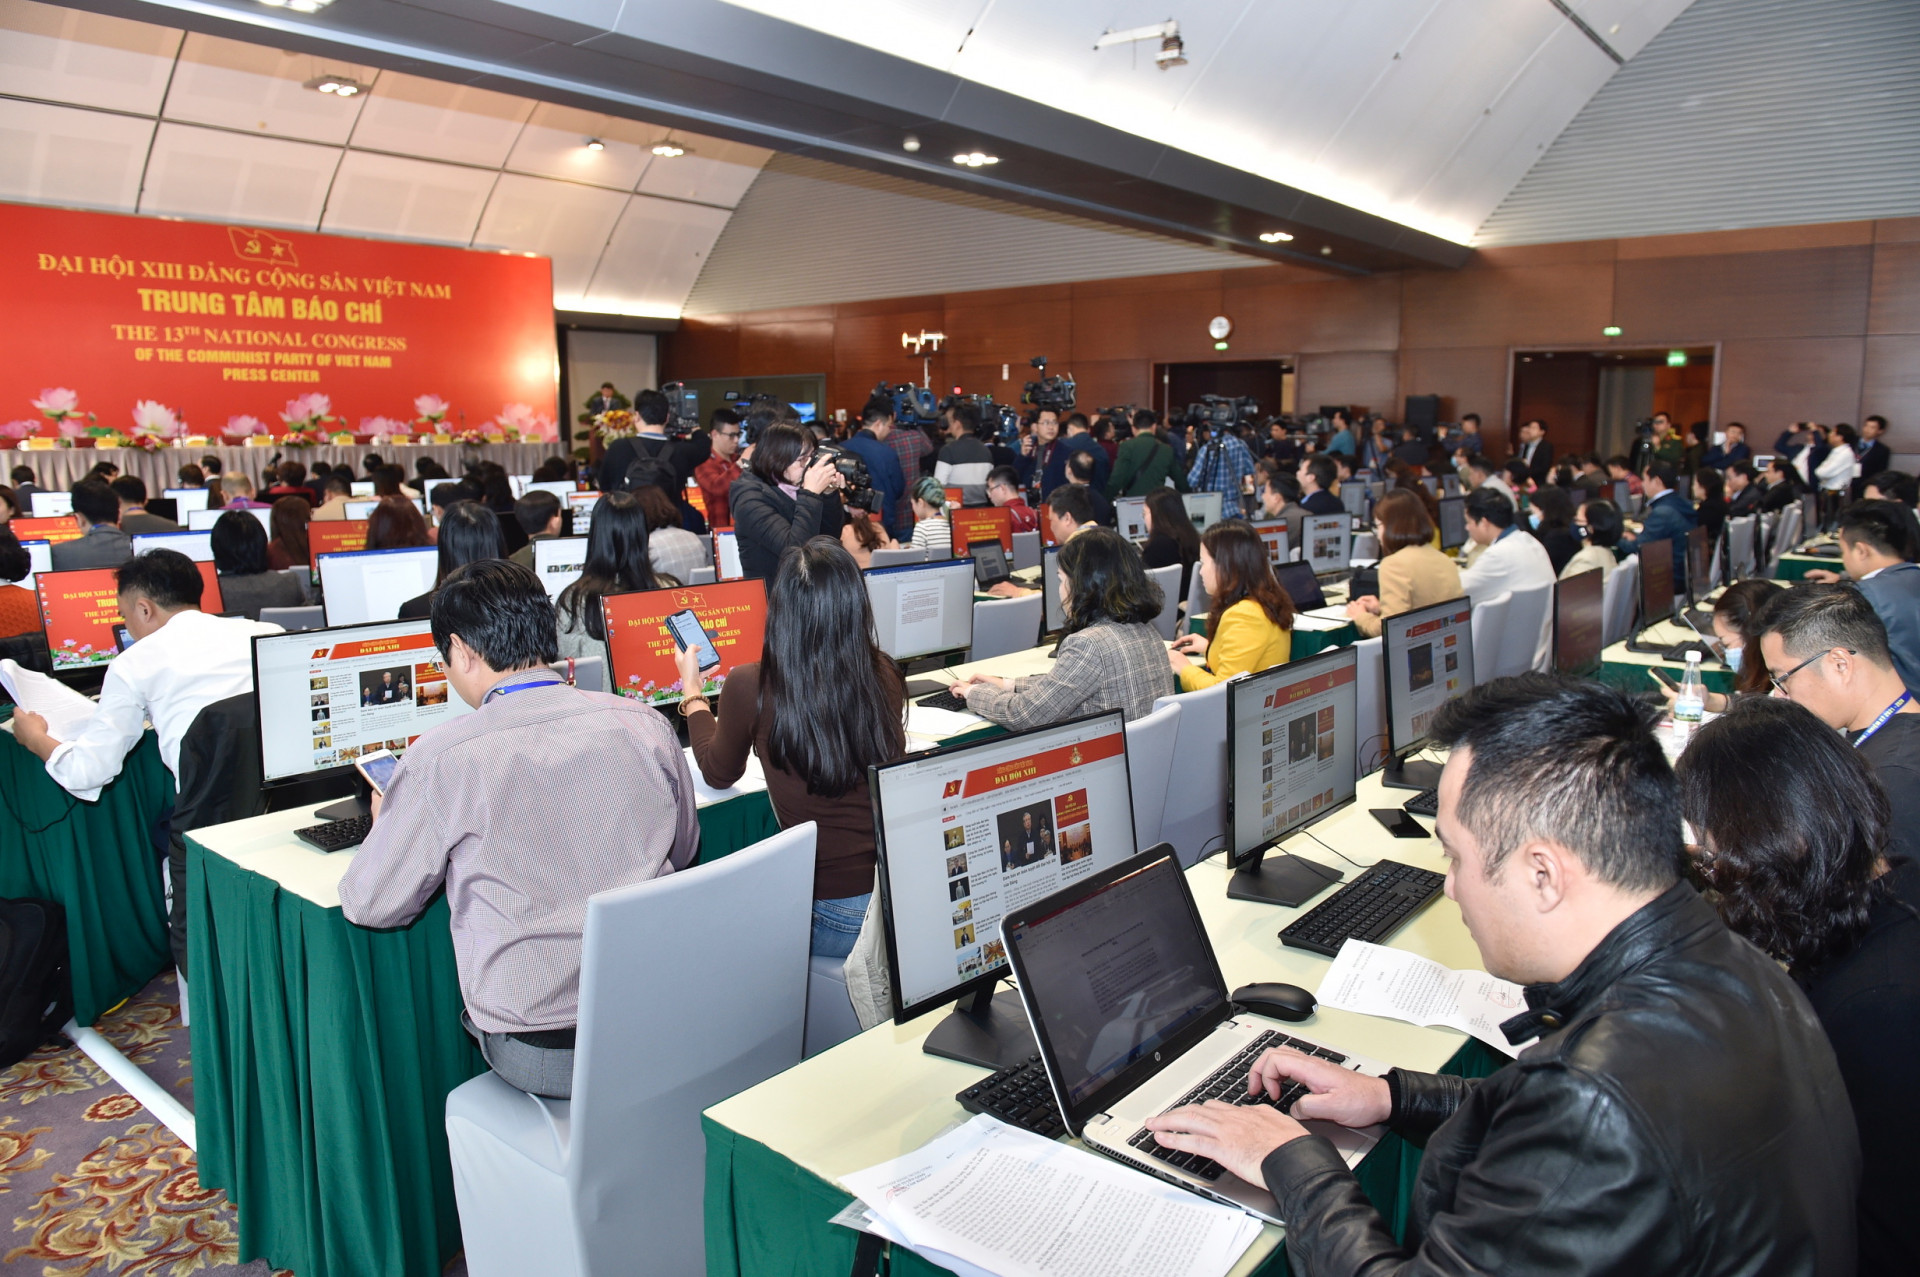 Trung tâm Báo chí trang bị toàn bộ máy tính để bàn có kết nối mạng để phục vụ và đáp ứng yêu cầu tác nghiệp của phóng viên trong nước và quốc tế. Ảnh: VGP/Nhật Bắc